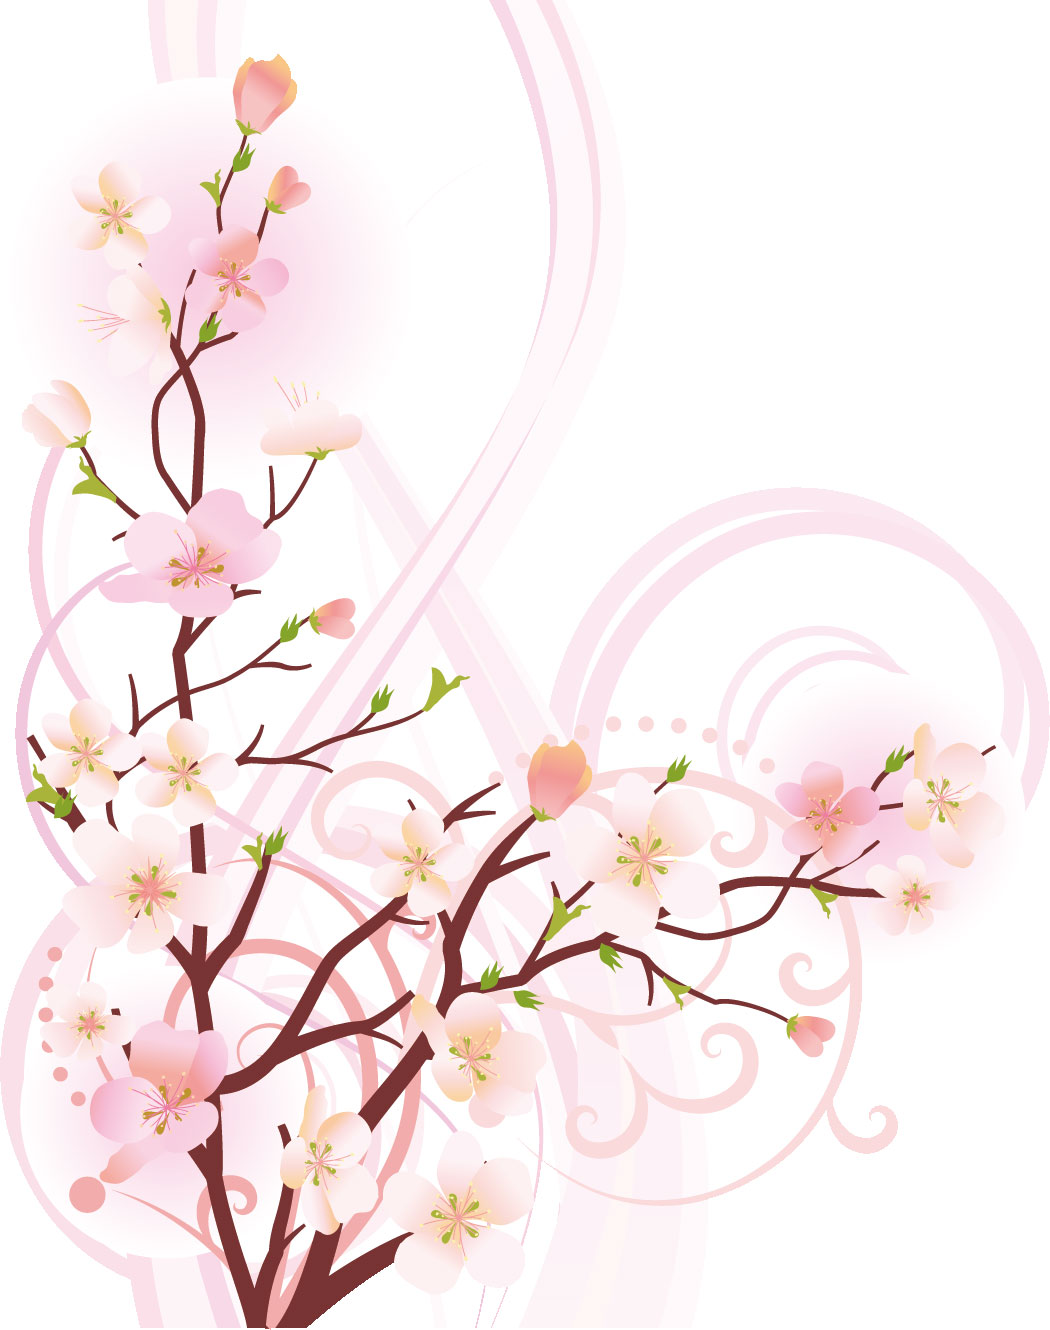 桜 さくら の画像 イラスト フリー素材 No 034 桜の枝葉